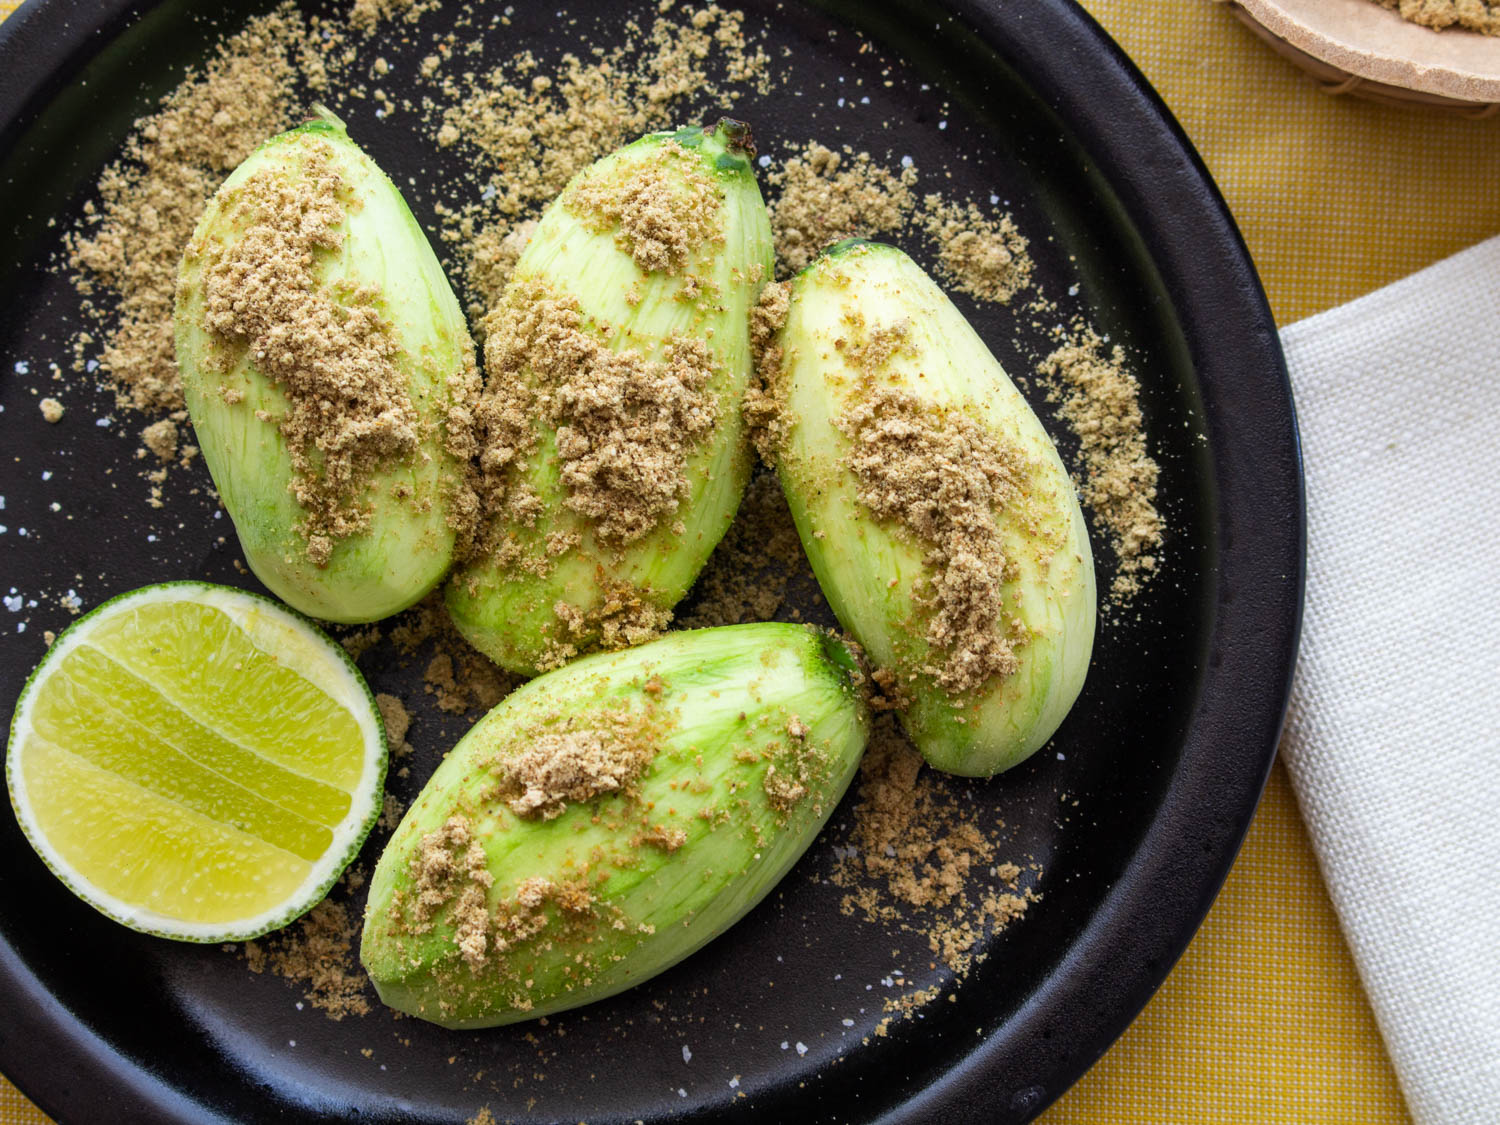 芒果verde con alguashte（萨尔瓦多绿色芒果与pepita调味）食谱